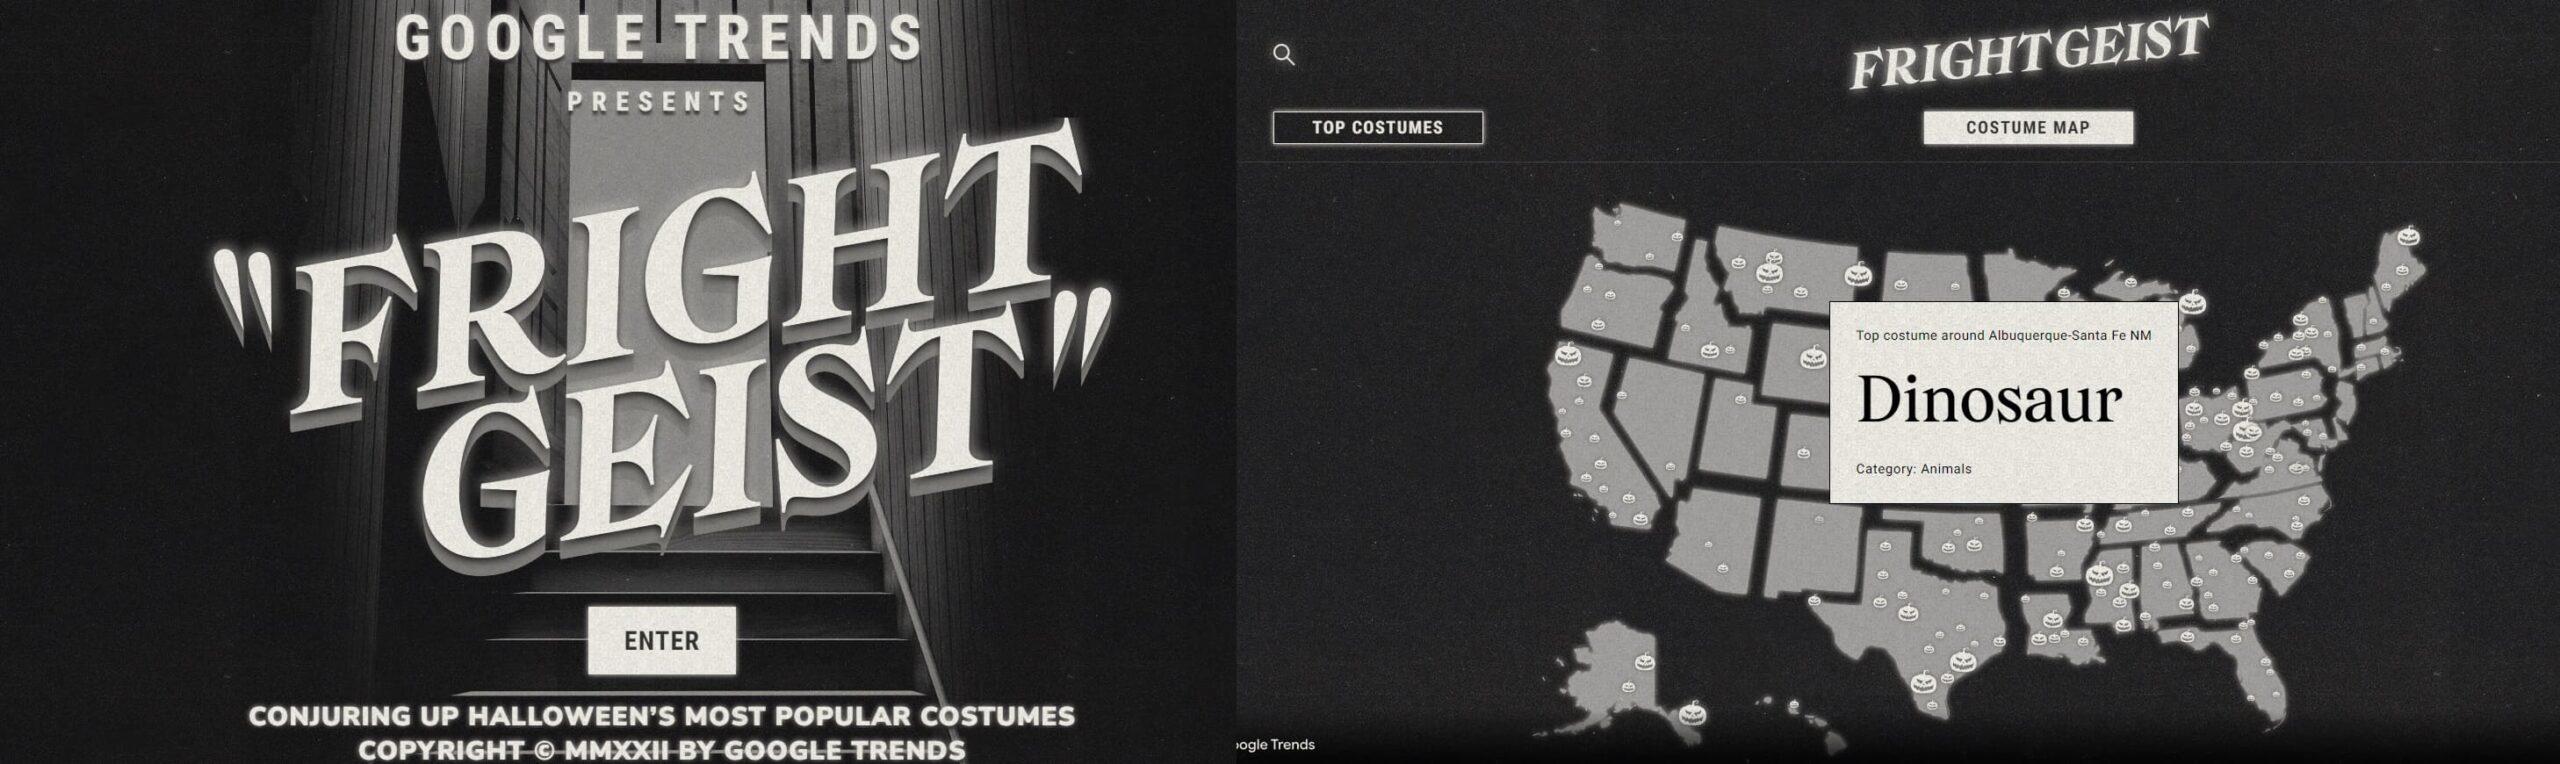 Captura de pantalla que muestra un artículo interactivo sobre los disfraces más populares para Halloween en Estados Unidos.